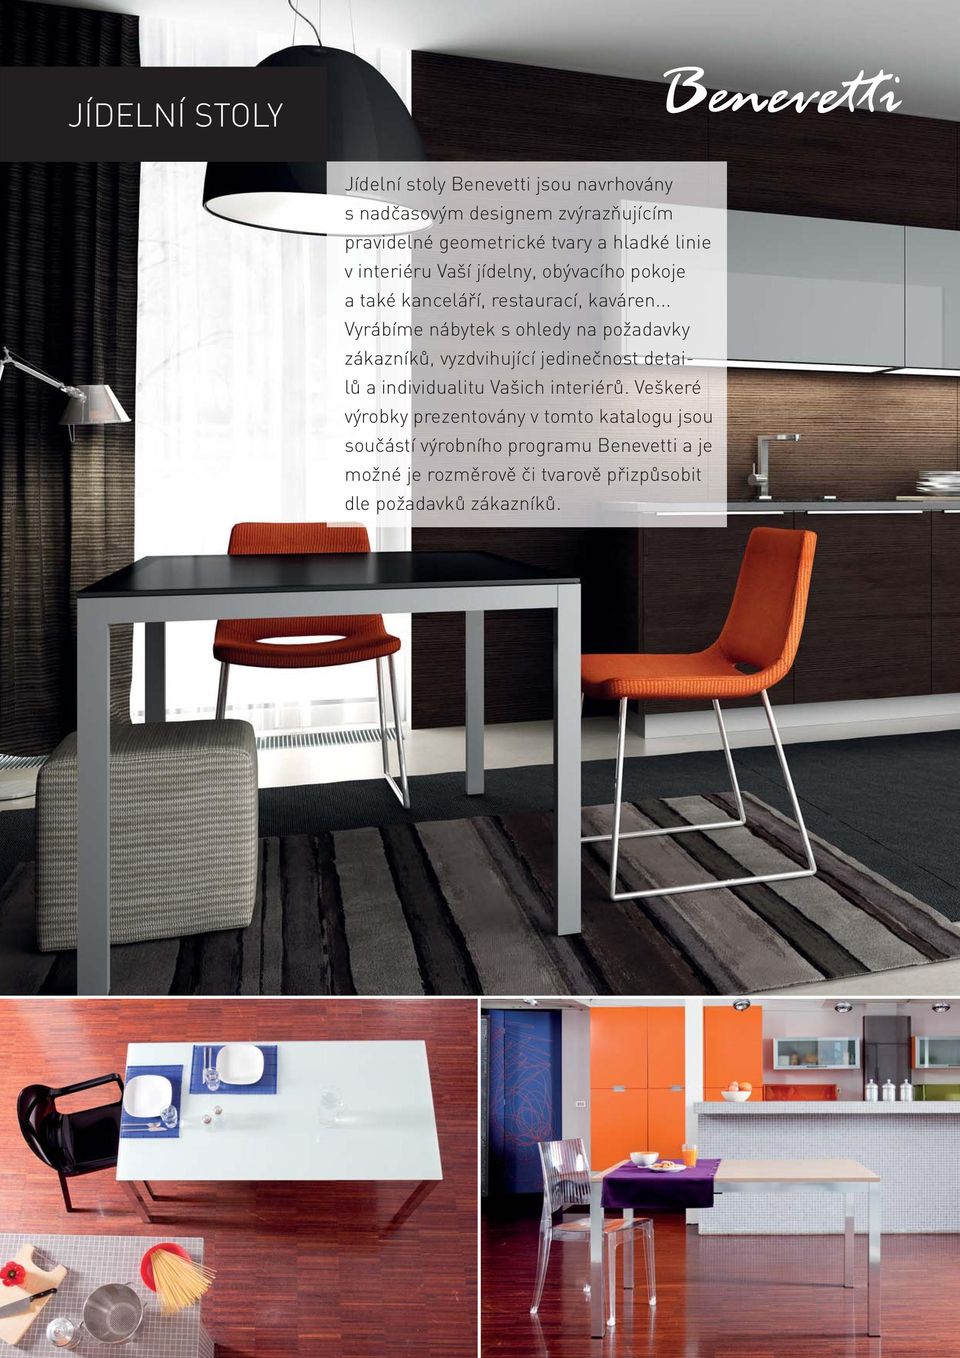 .. Vyrábíme nábytek s ohledy na požadavky zákazníků, vyzdvihující jedinečnost detailů a individualitu Vašich interiérů.